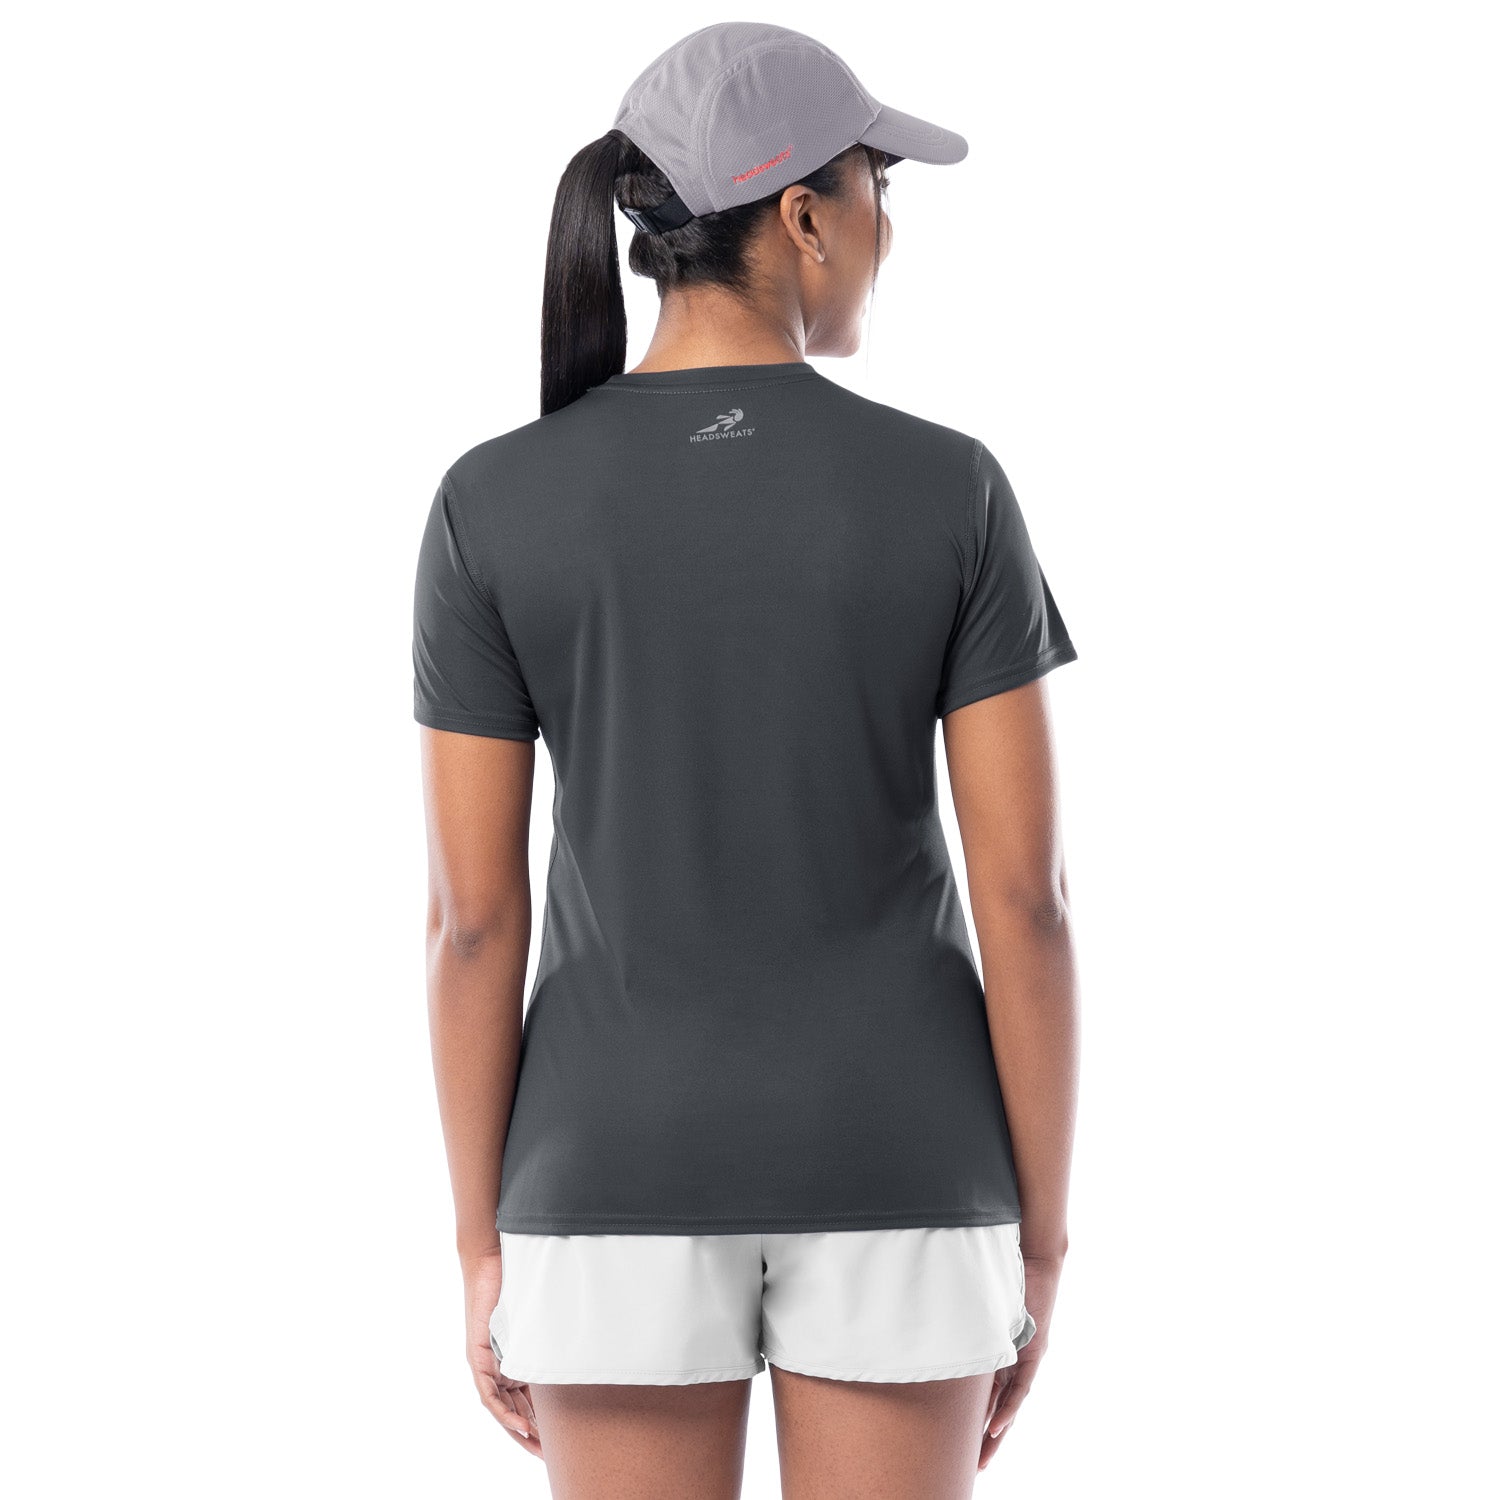 Women's Dark Grey Training T-Shirt Back View